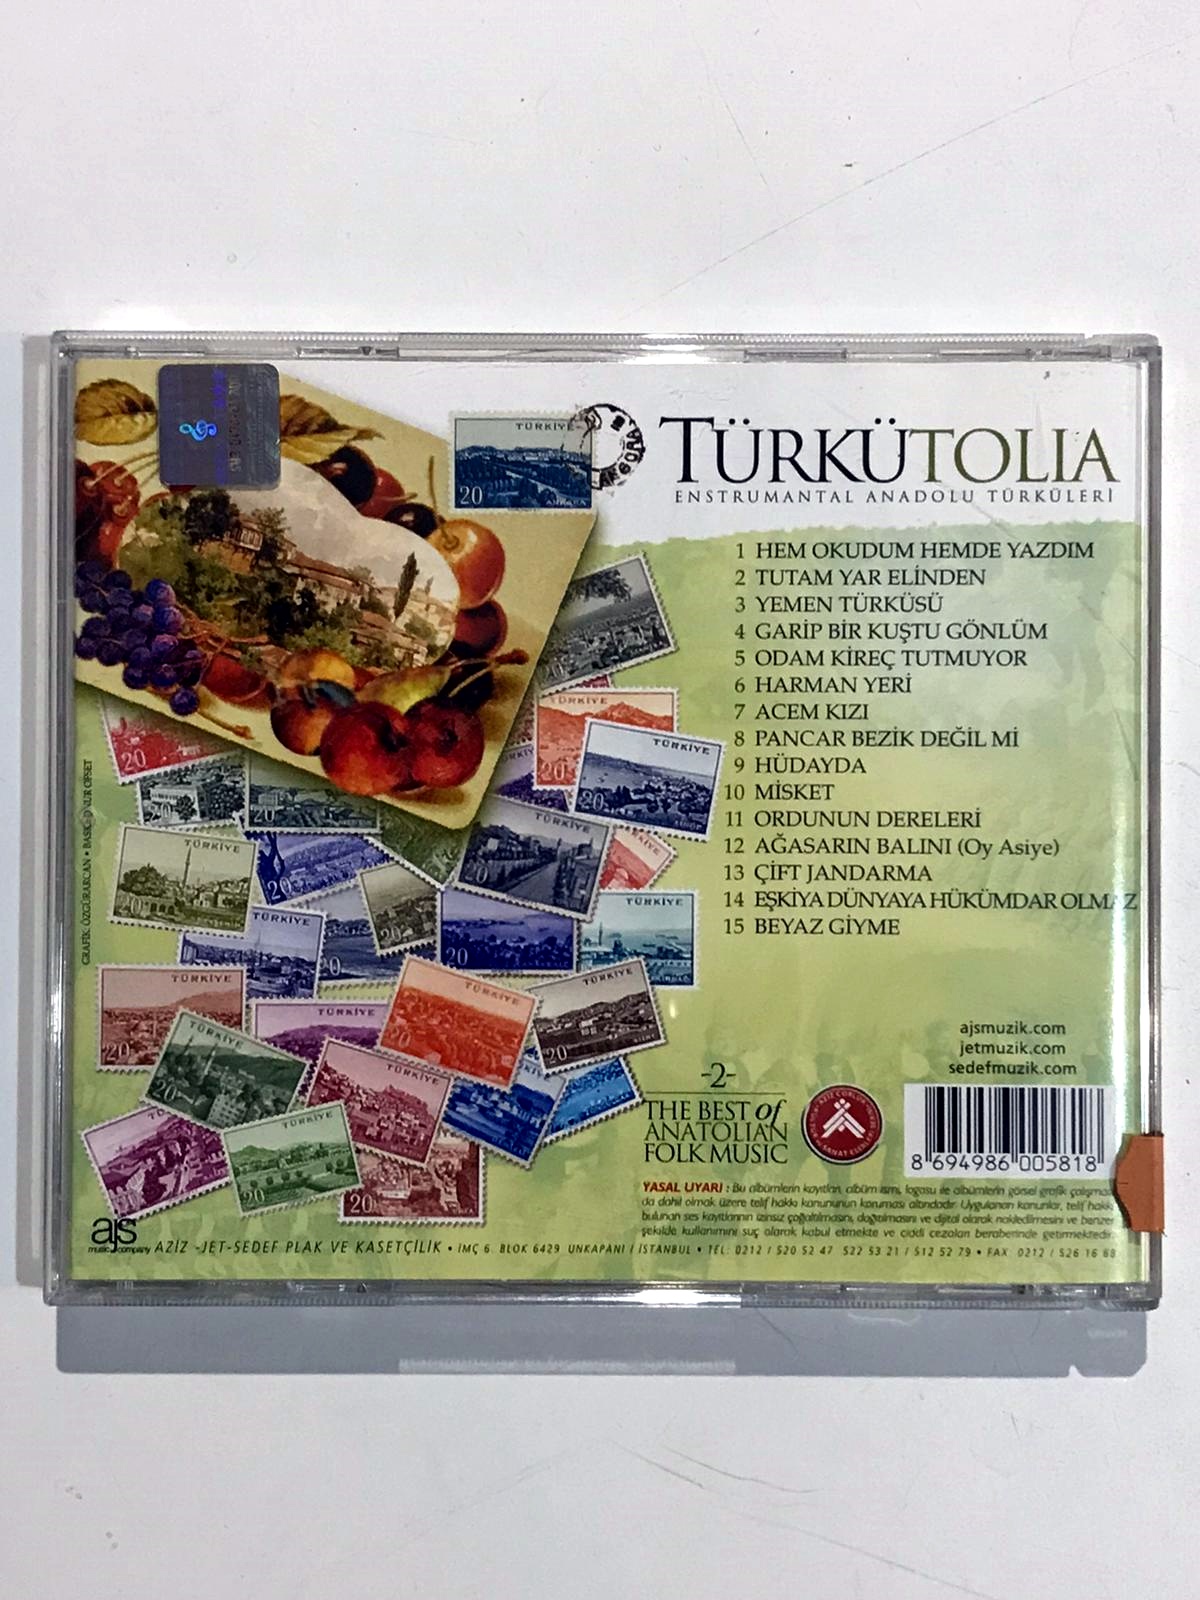 Türkütolia 2 / The Best Of Anatolian Folk Music - Cd